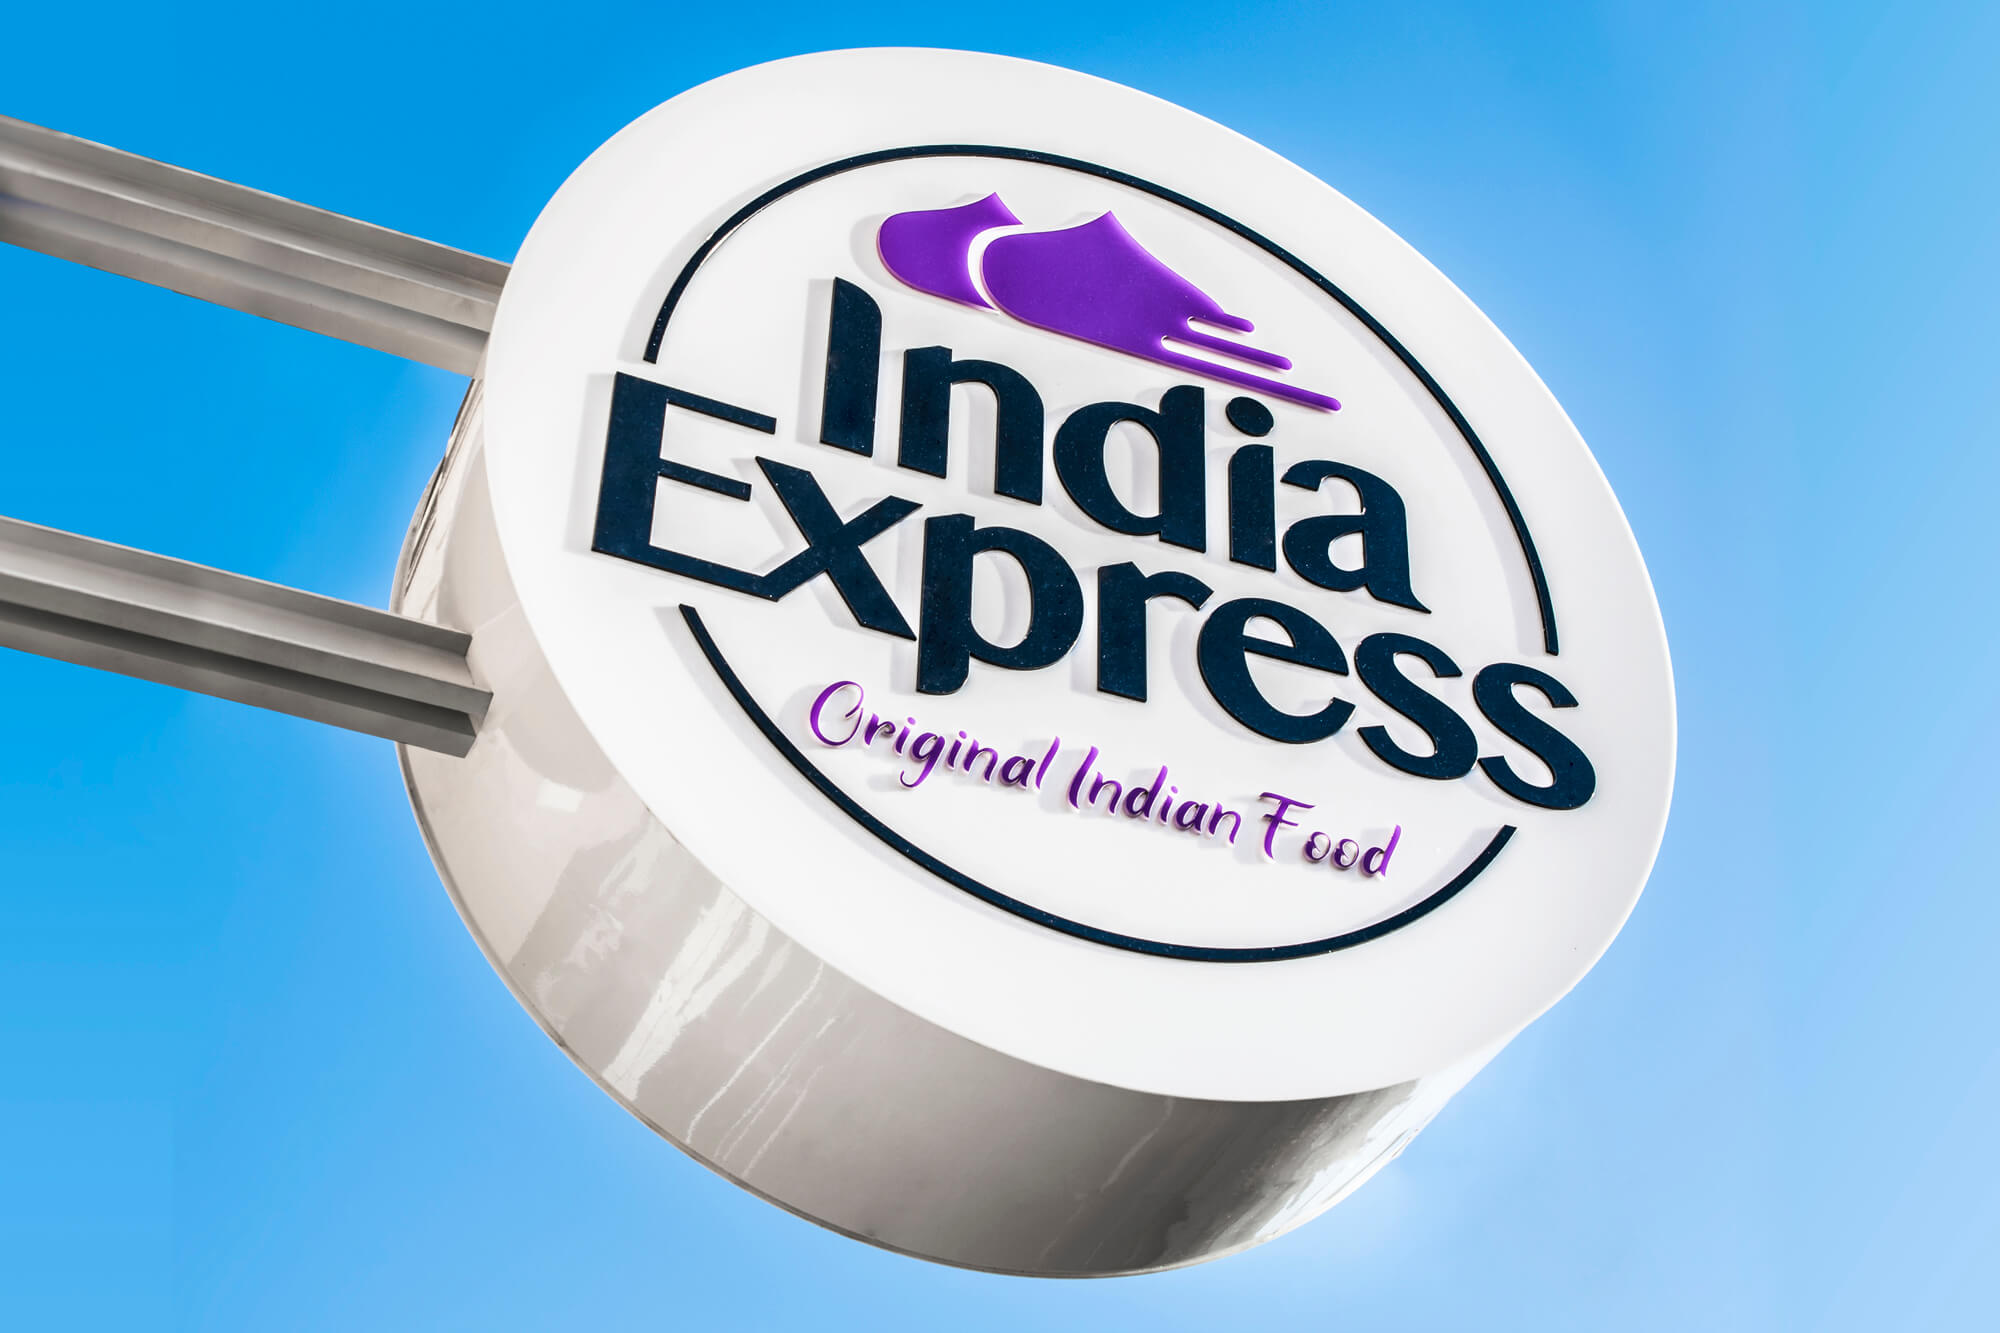 India Express - India Express - semafor reklamowy firmy z logiem zawieszony obok wejścia